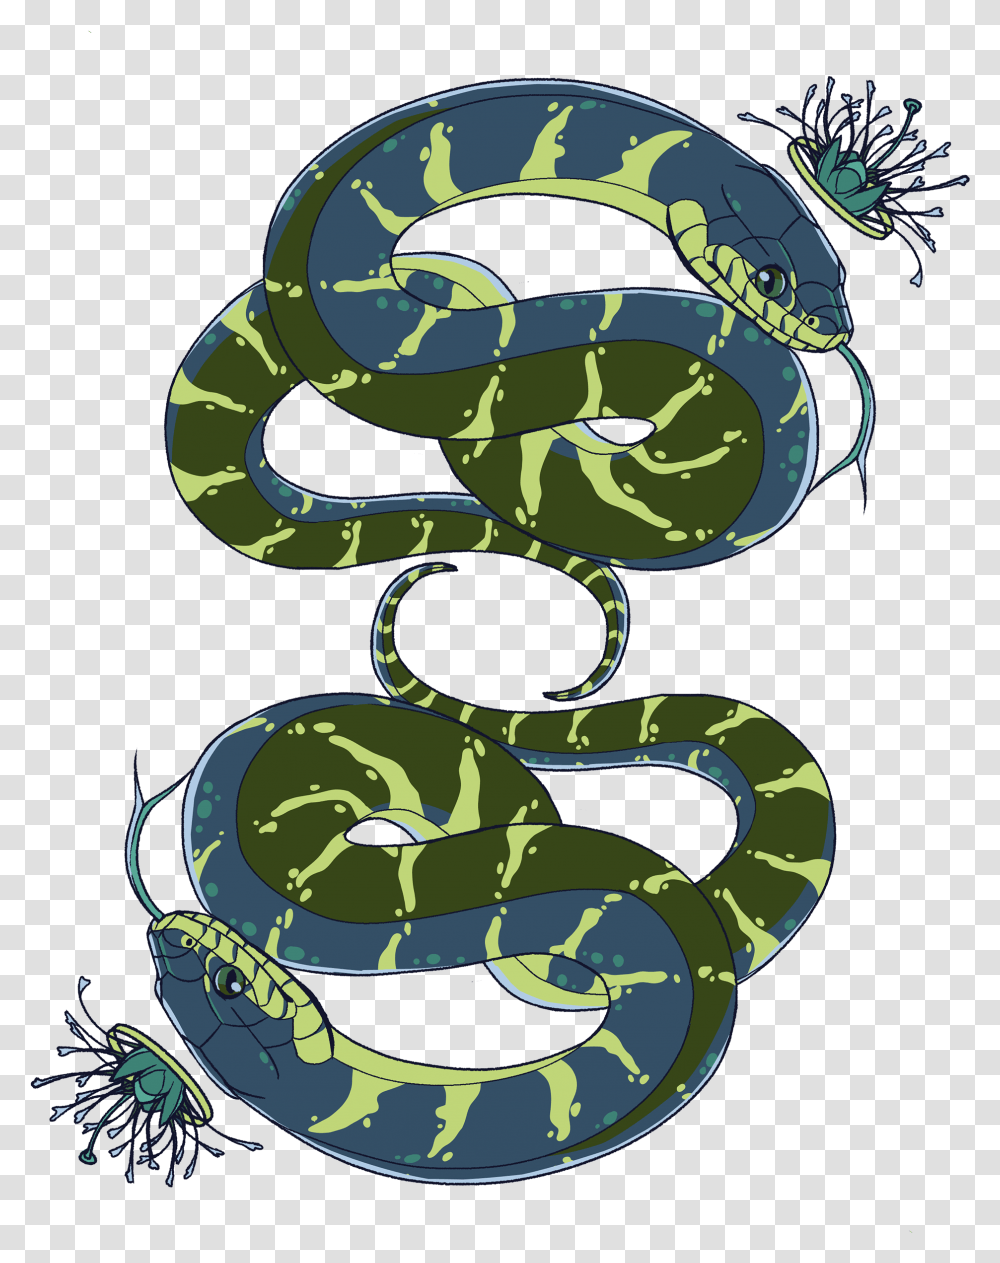 Jack Of Clubs Illustration, Reptile, Animal, Snake, Green Snake Transparent Png